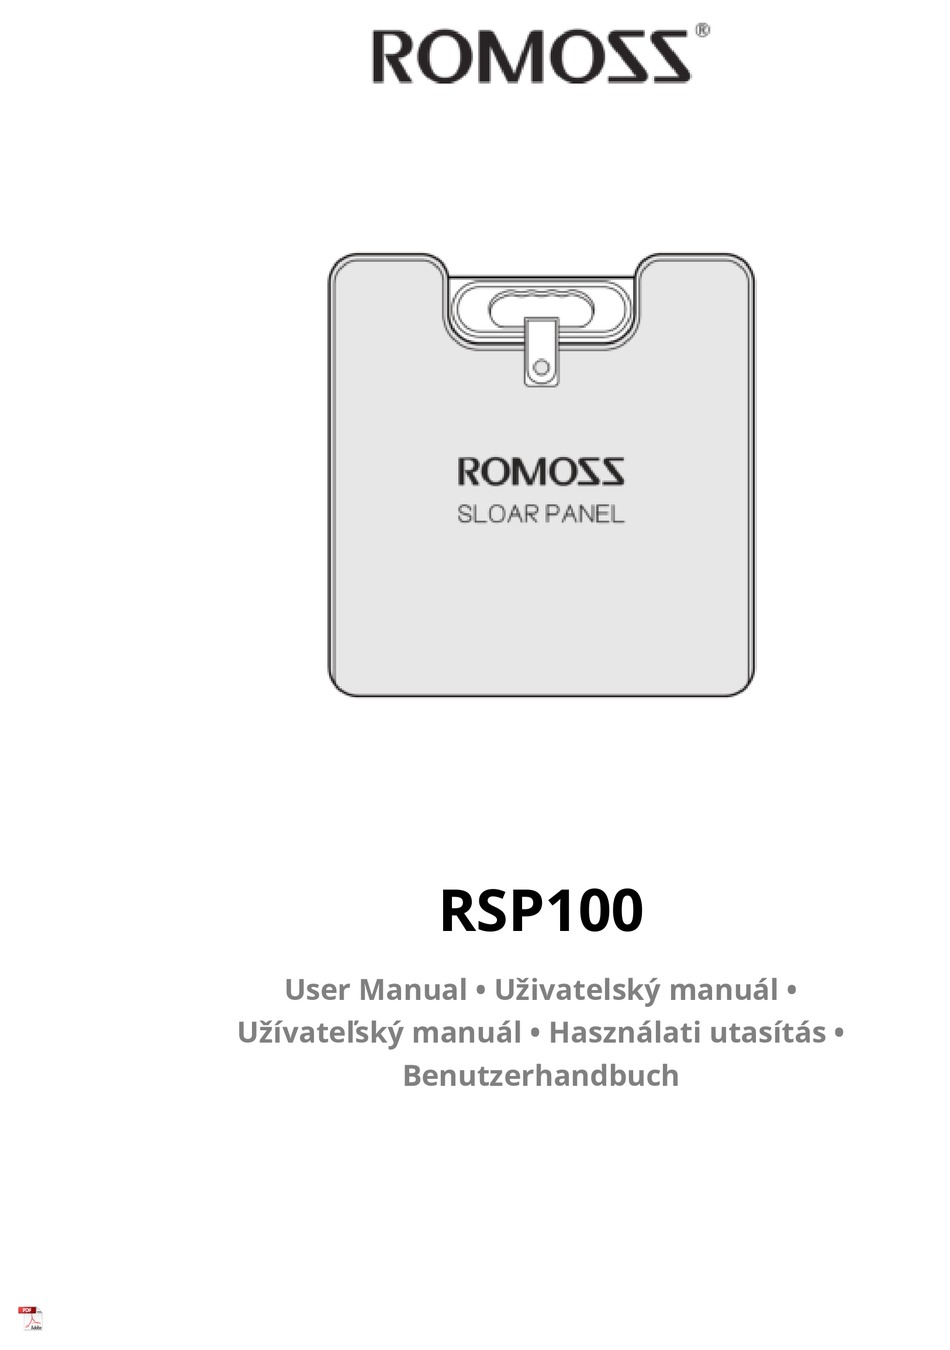 ROMOSS RSP100 USER MANUAL Pdf Download | ManualsLib